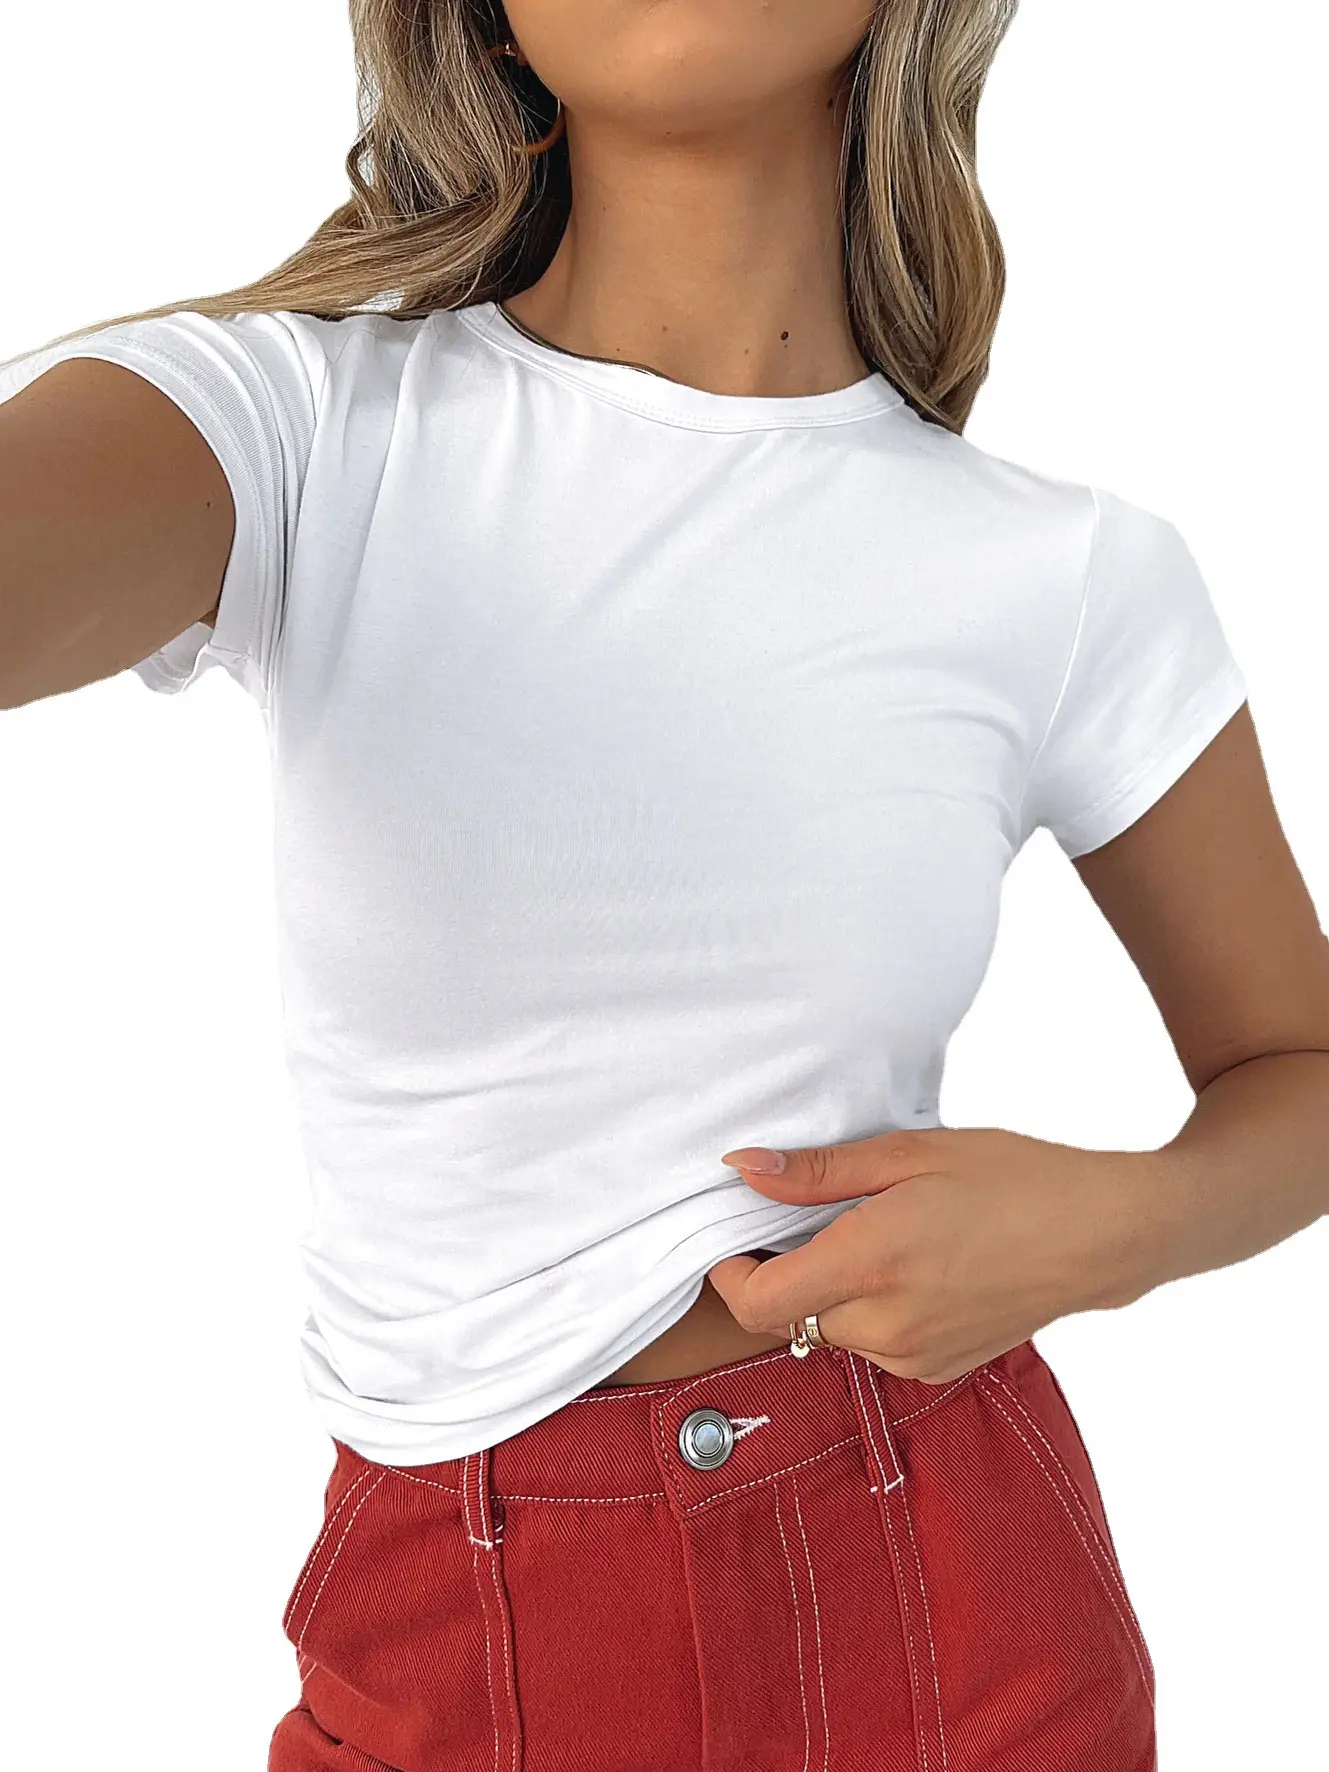 2023 बुनियादी टी फसली देवियों उच्च गुणवत्ता सादे गर्मियों कपास तंग स्लिम फिट टी शर्ट शीर्ष हिप हॉप महिलाओं सफेद टी शर्ट फसल शीर्ष